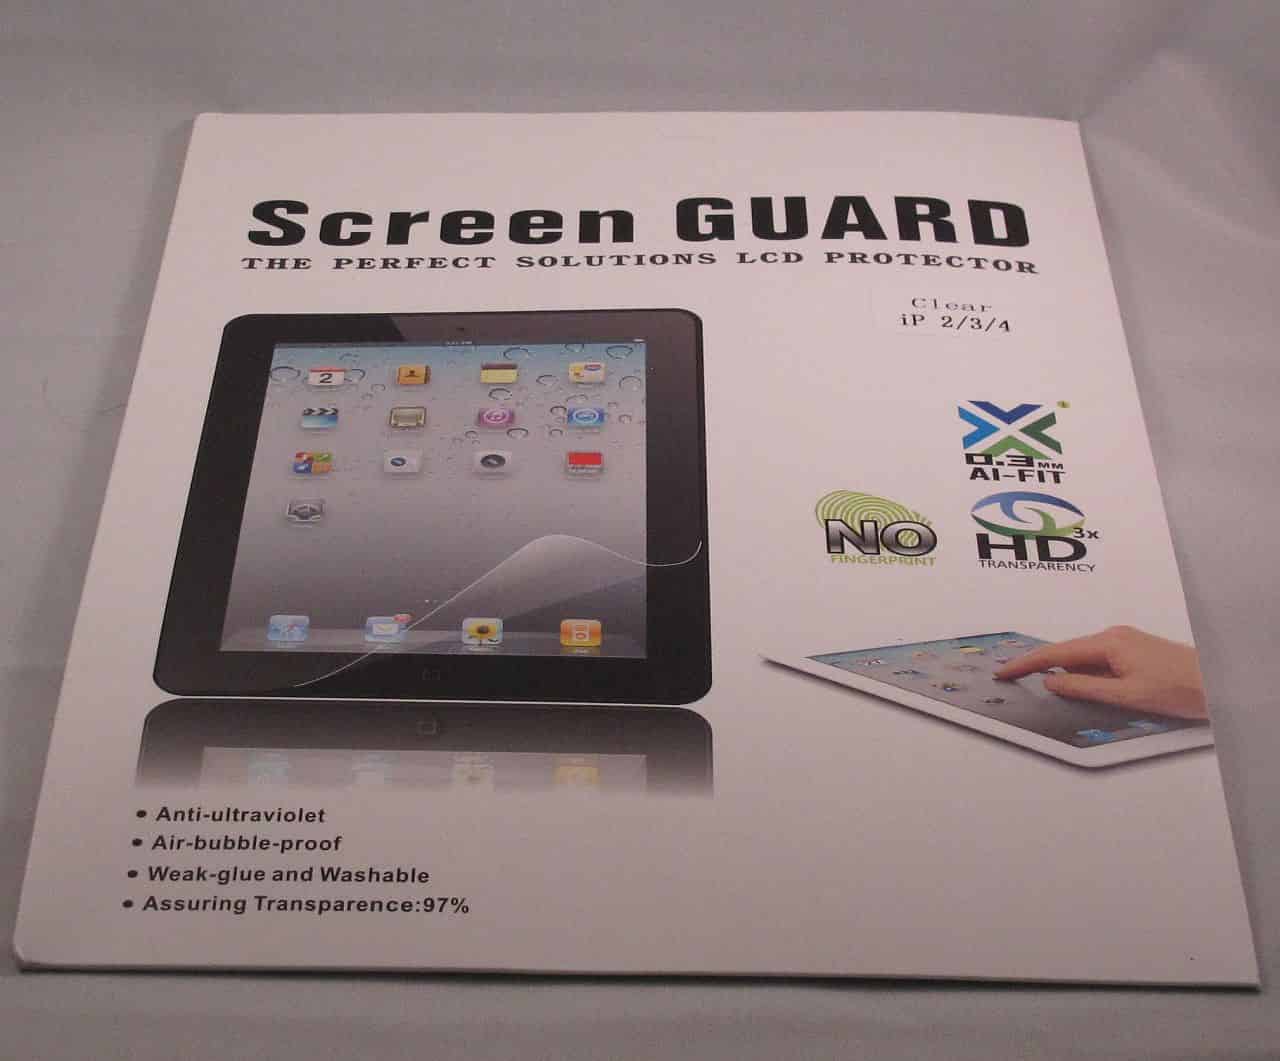 iPad 2 / 3 / 4 Screen Protector